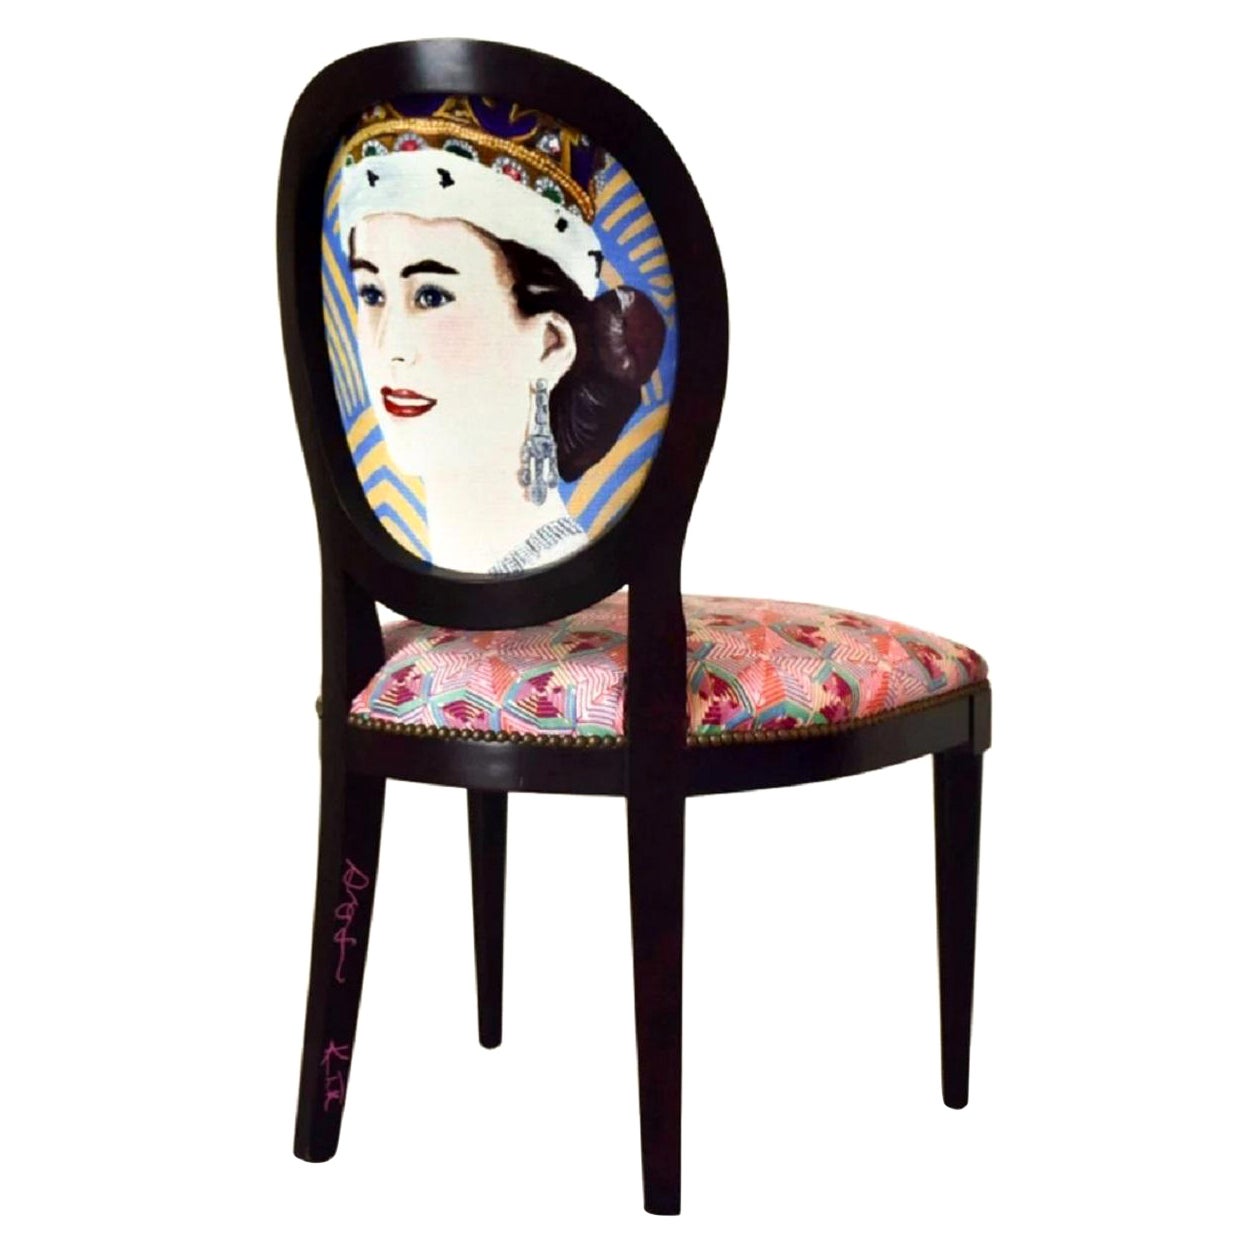 "Queen Elizabeth II" Dining Chair by Ashley Longshore x Ken Fulk, 2021